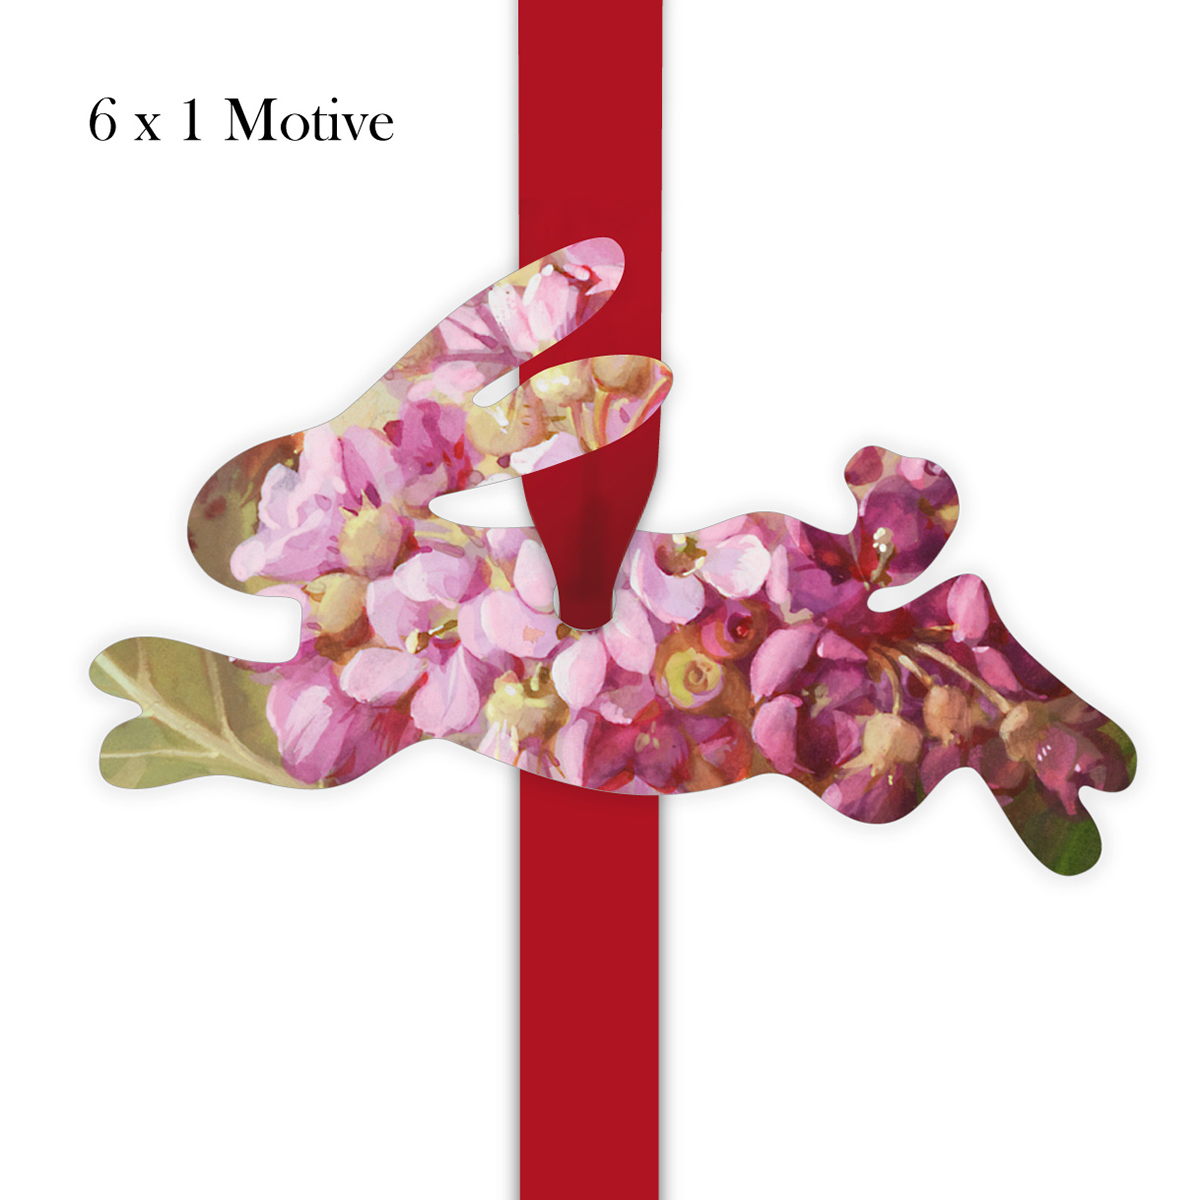 Kartenkaufrausch: Geschenkanhänger mit zarten Primeln aus unserer Geburtstags Papeterie in rosa